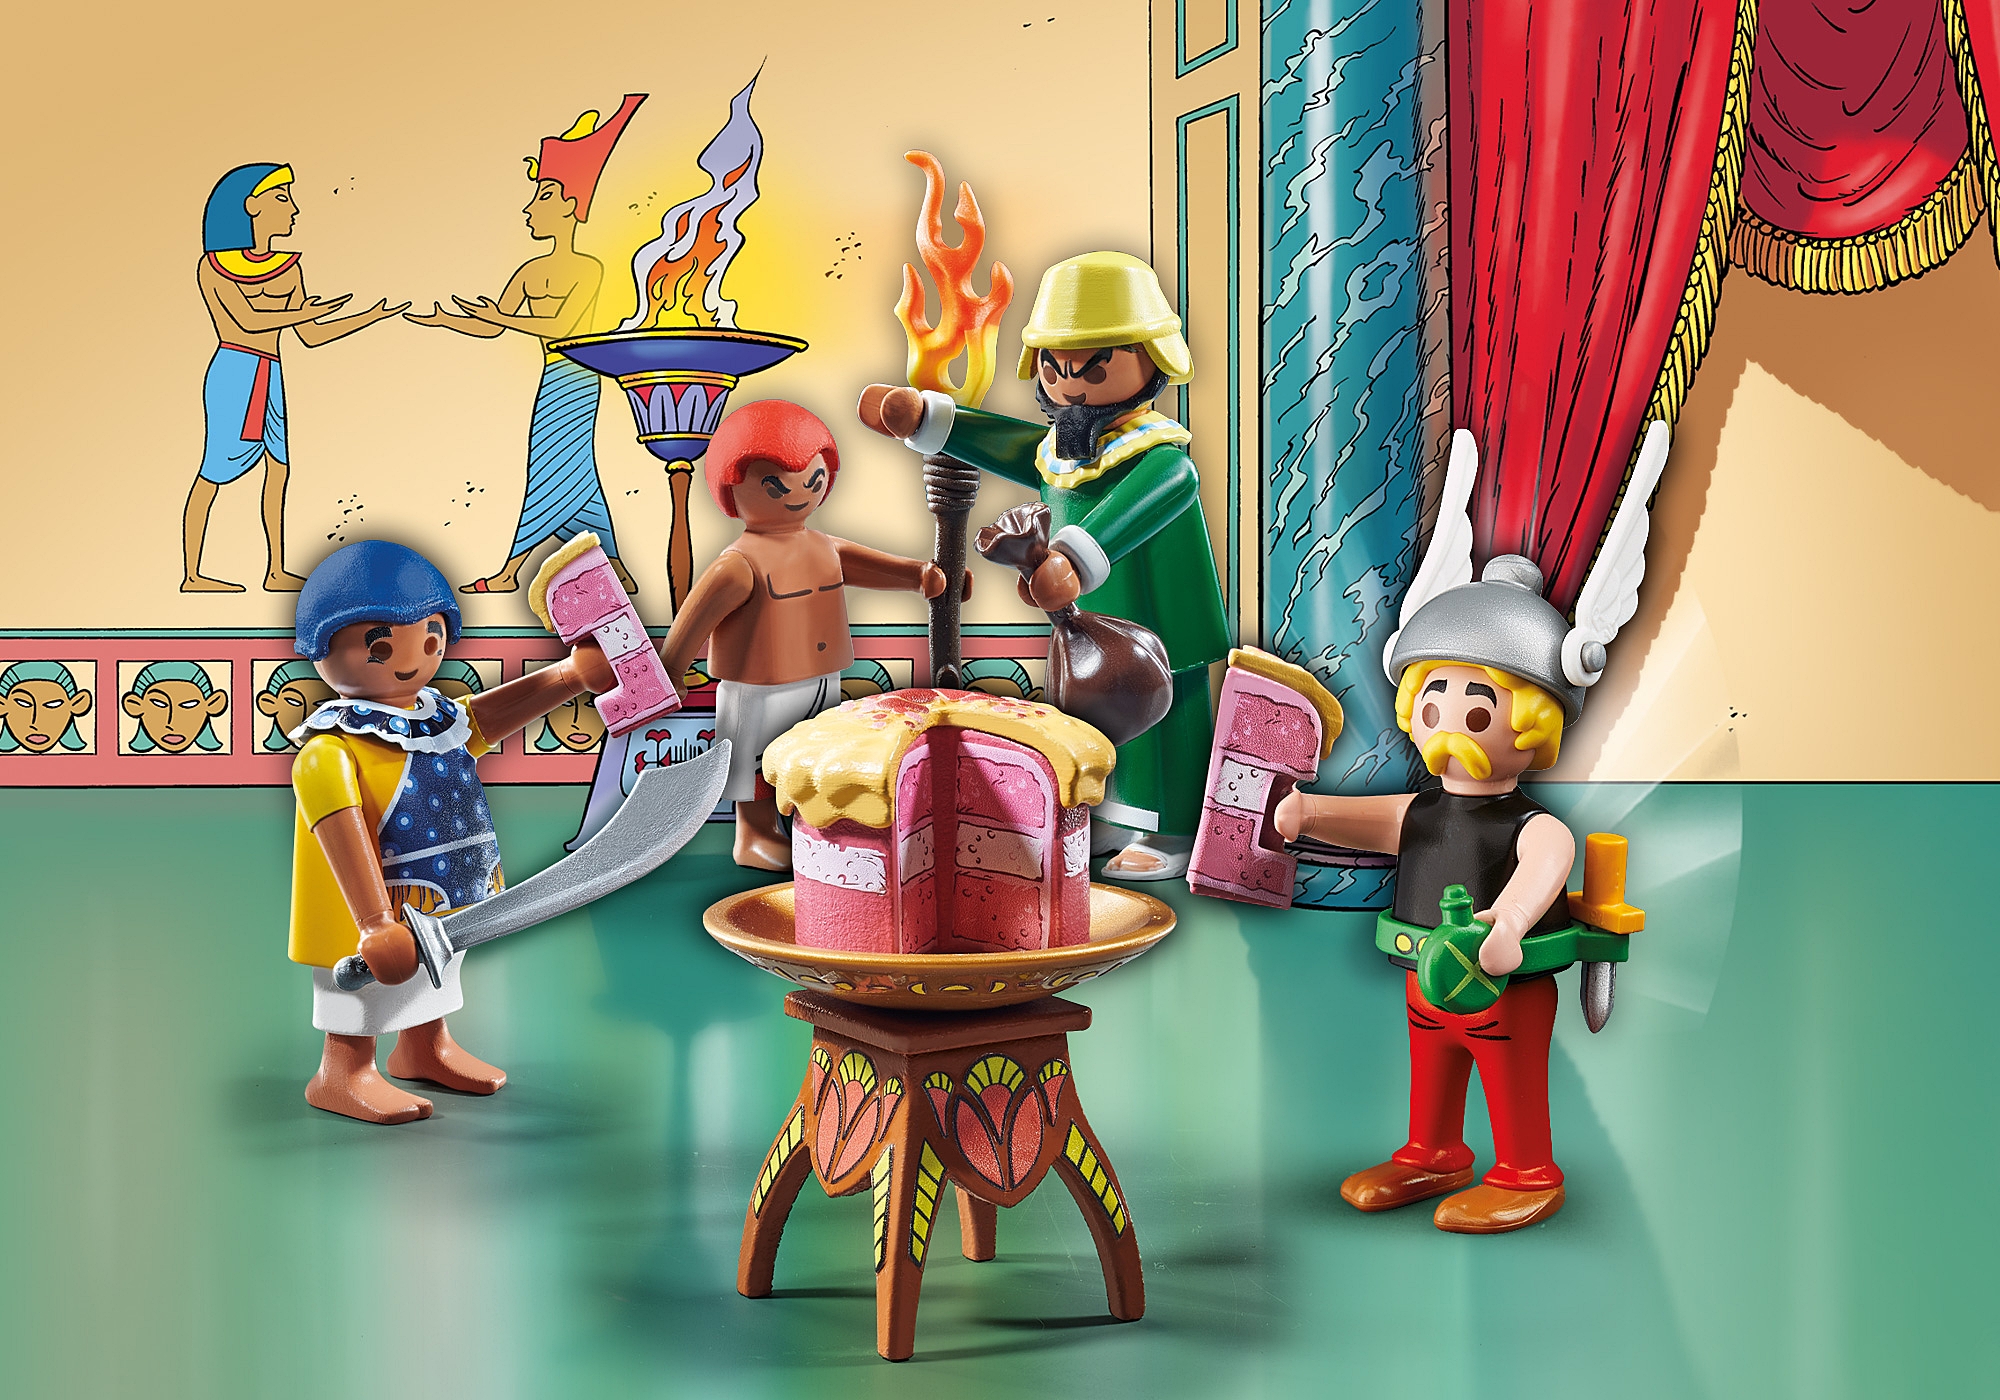 Playmobil Astérix Paletabis y la tarta envenenada 71269